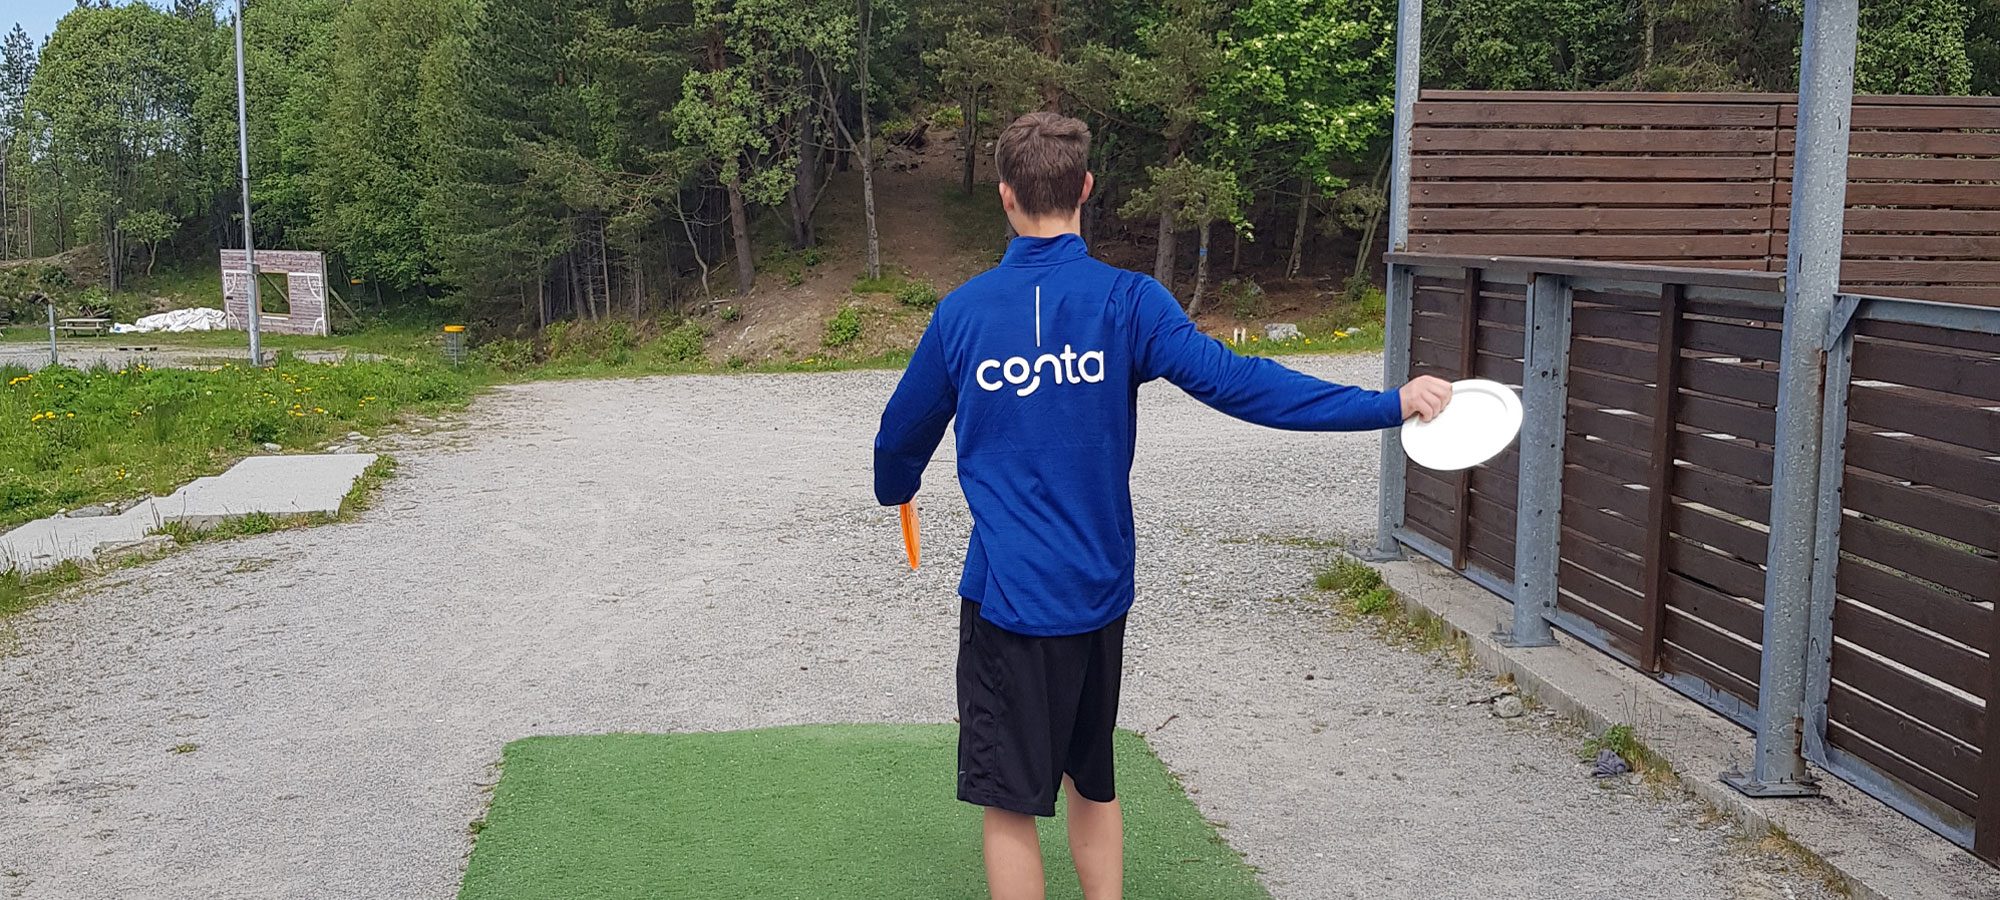 Knut Håland kaster frisbee